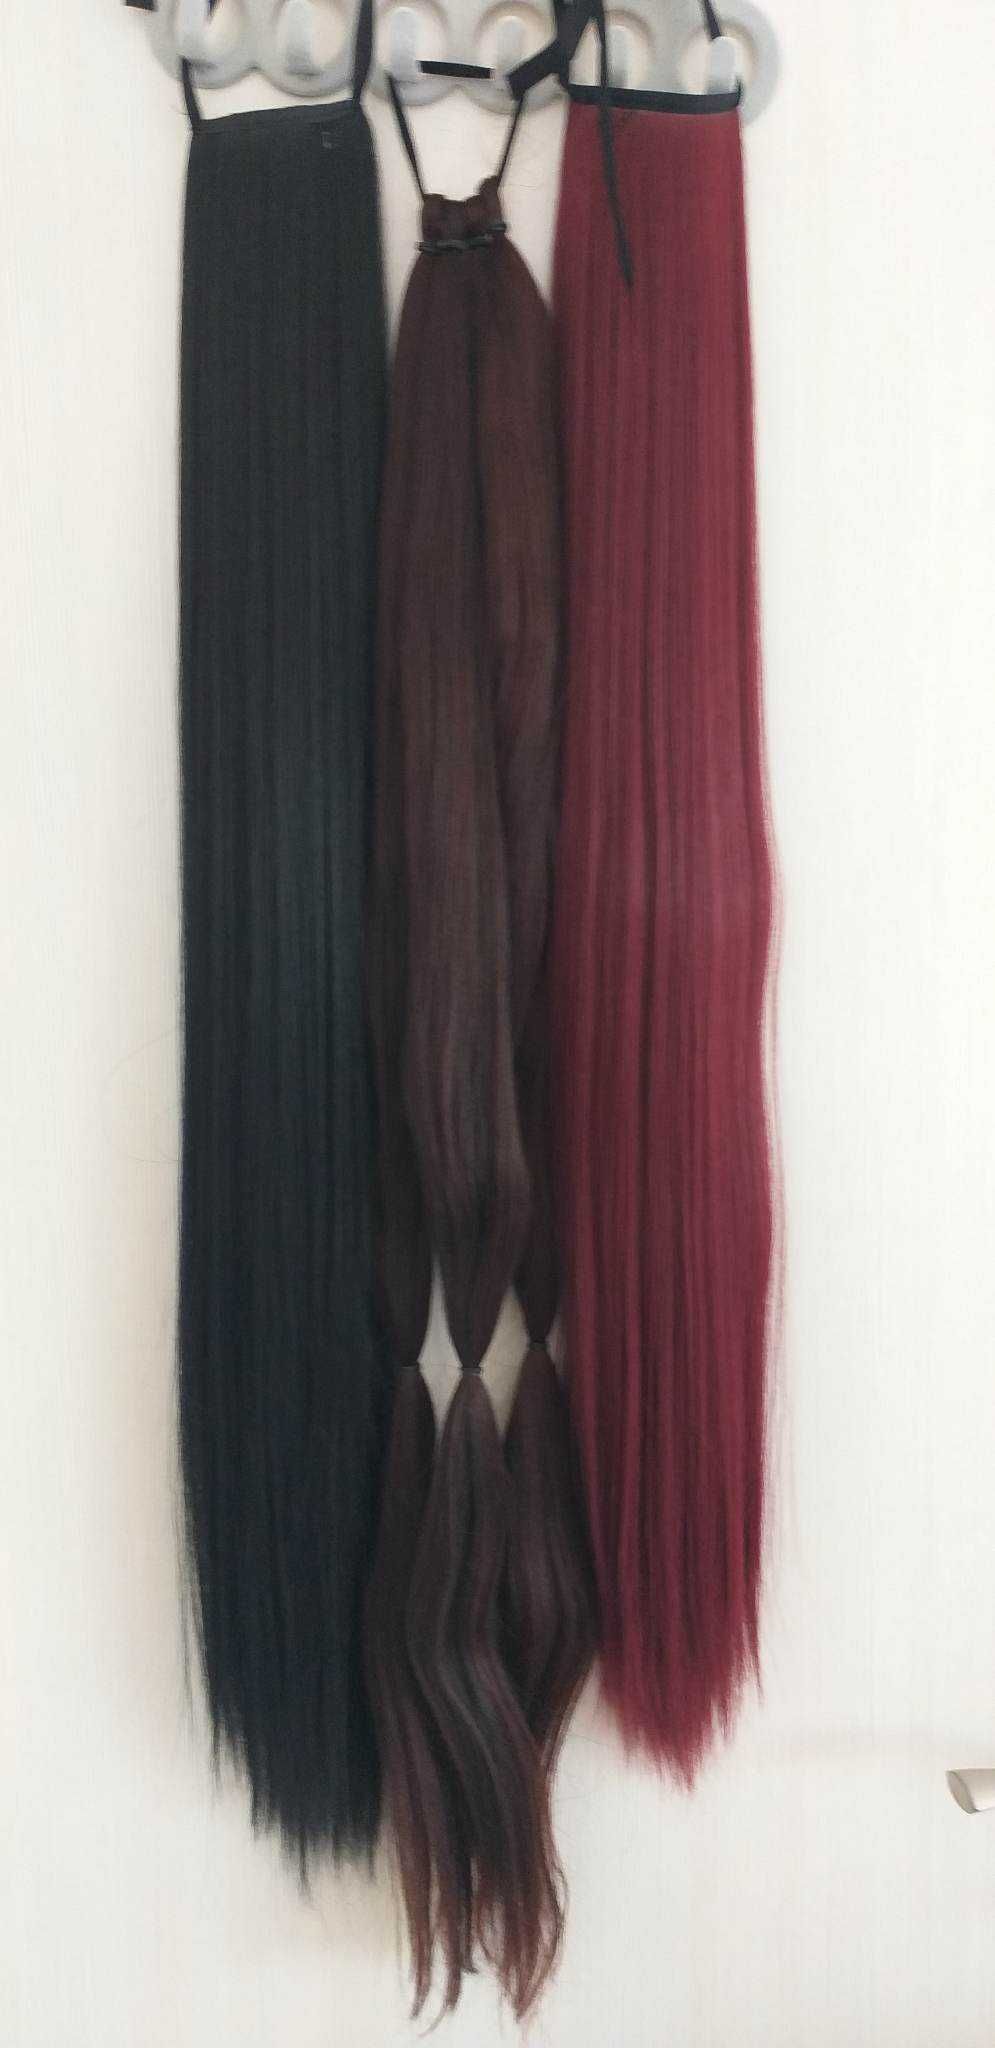 Опашки и плитки - черна, червена, кестенява опашка  60-65-85-90 см.